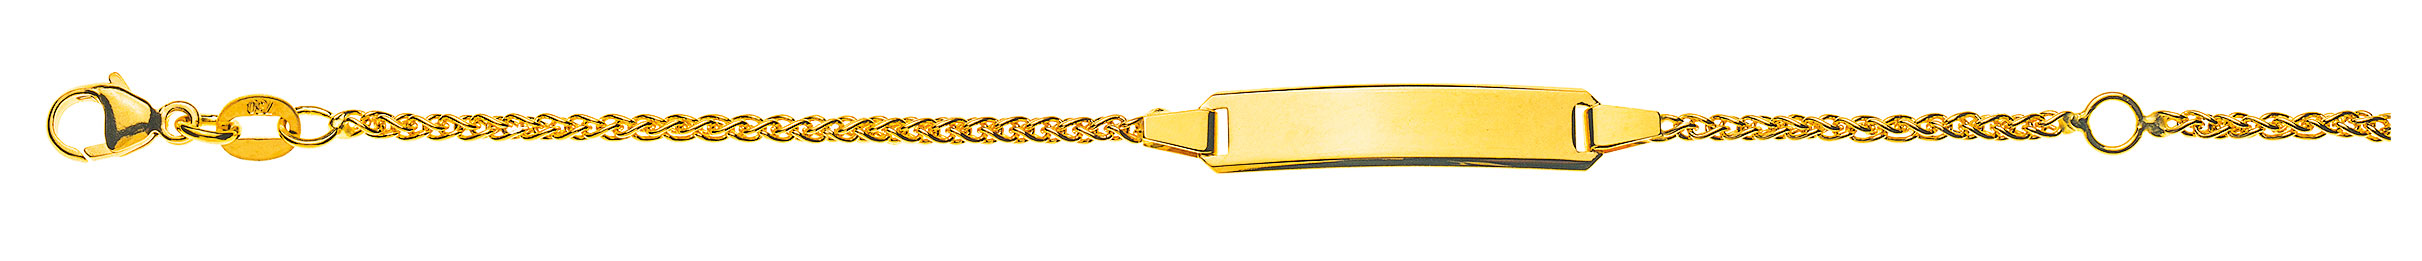 AURONOS Prestige ID-Bracelet en or jaune 18k Chaîne à torsades 18cm